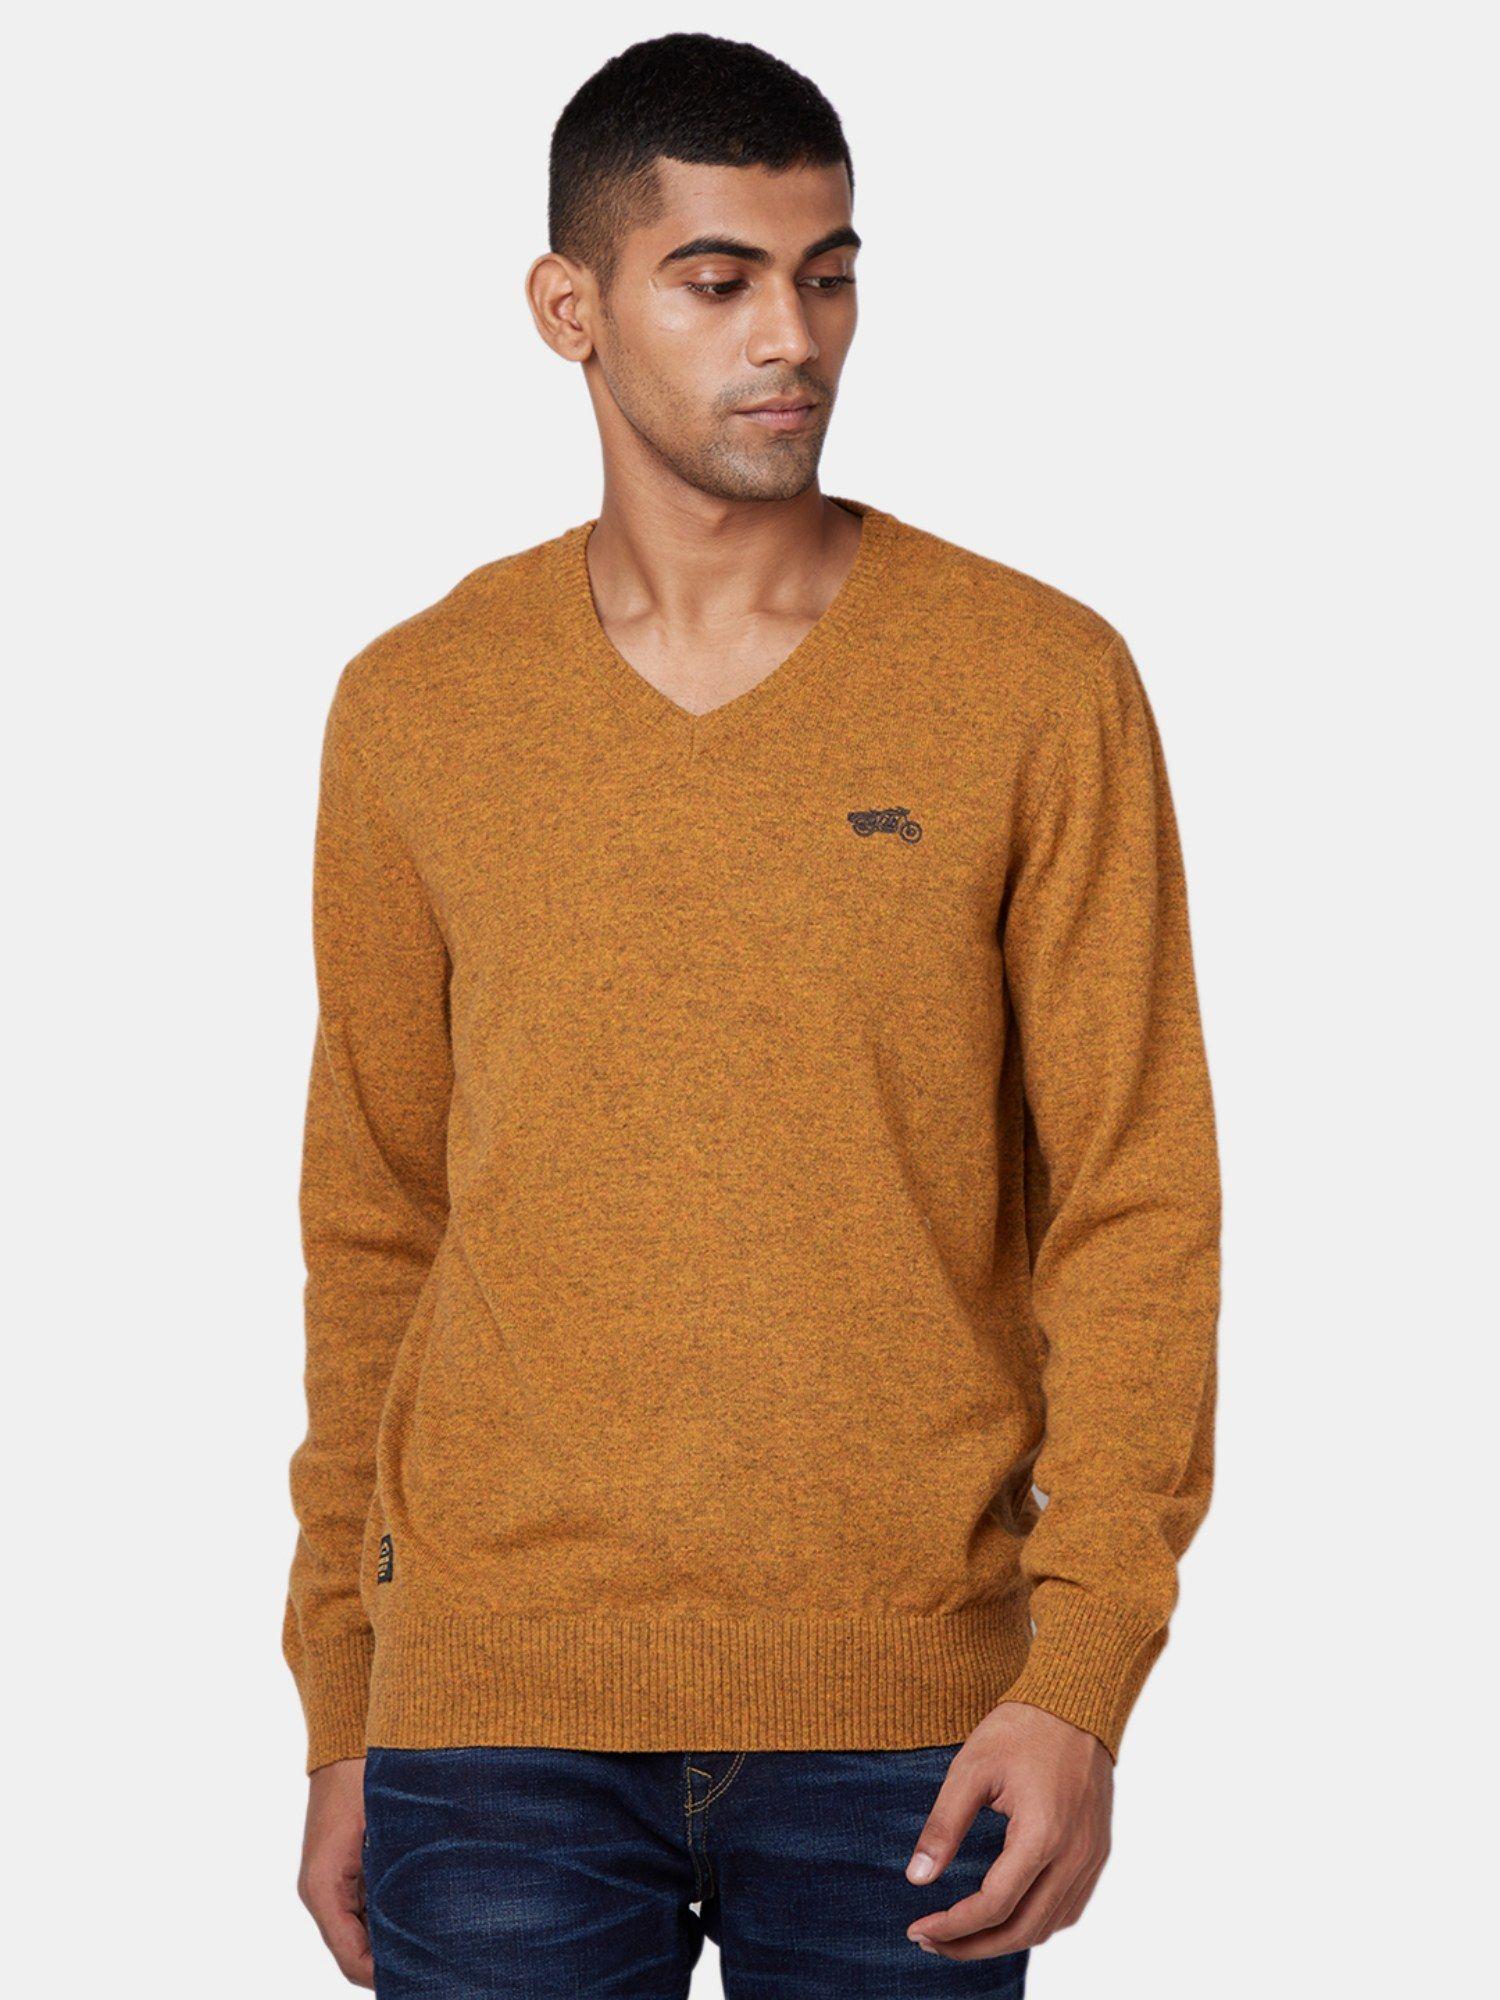 v-neck mustard sweater